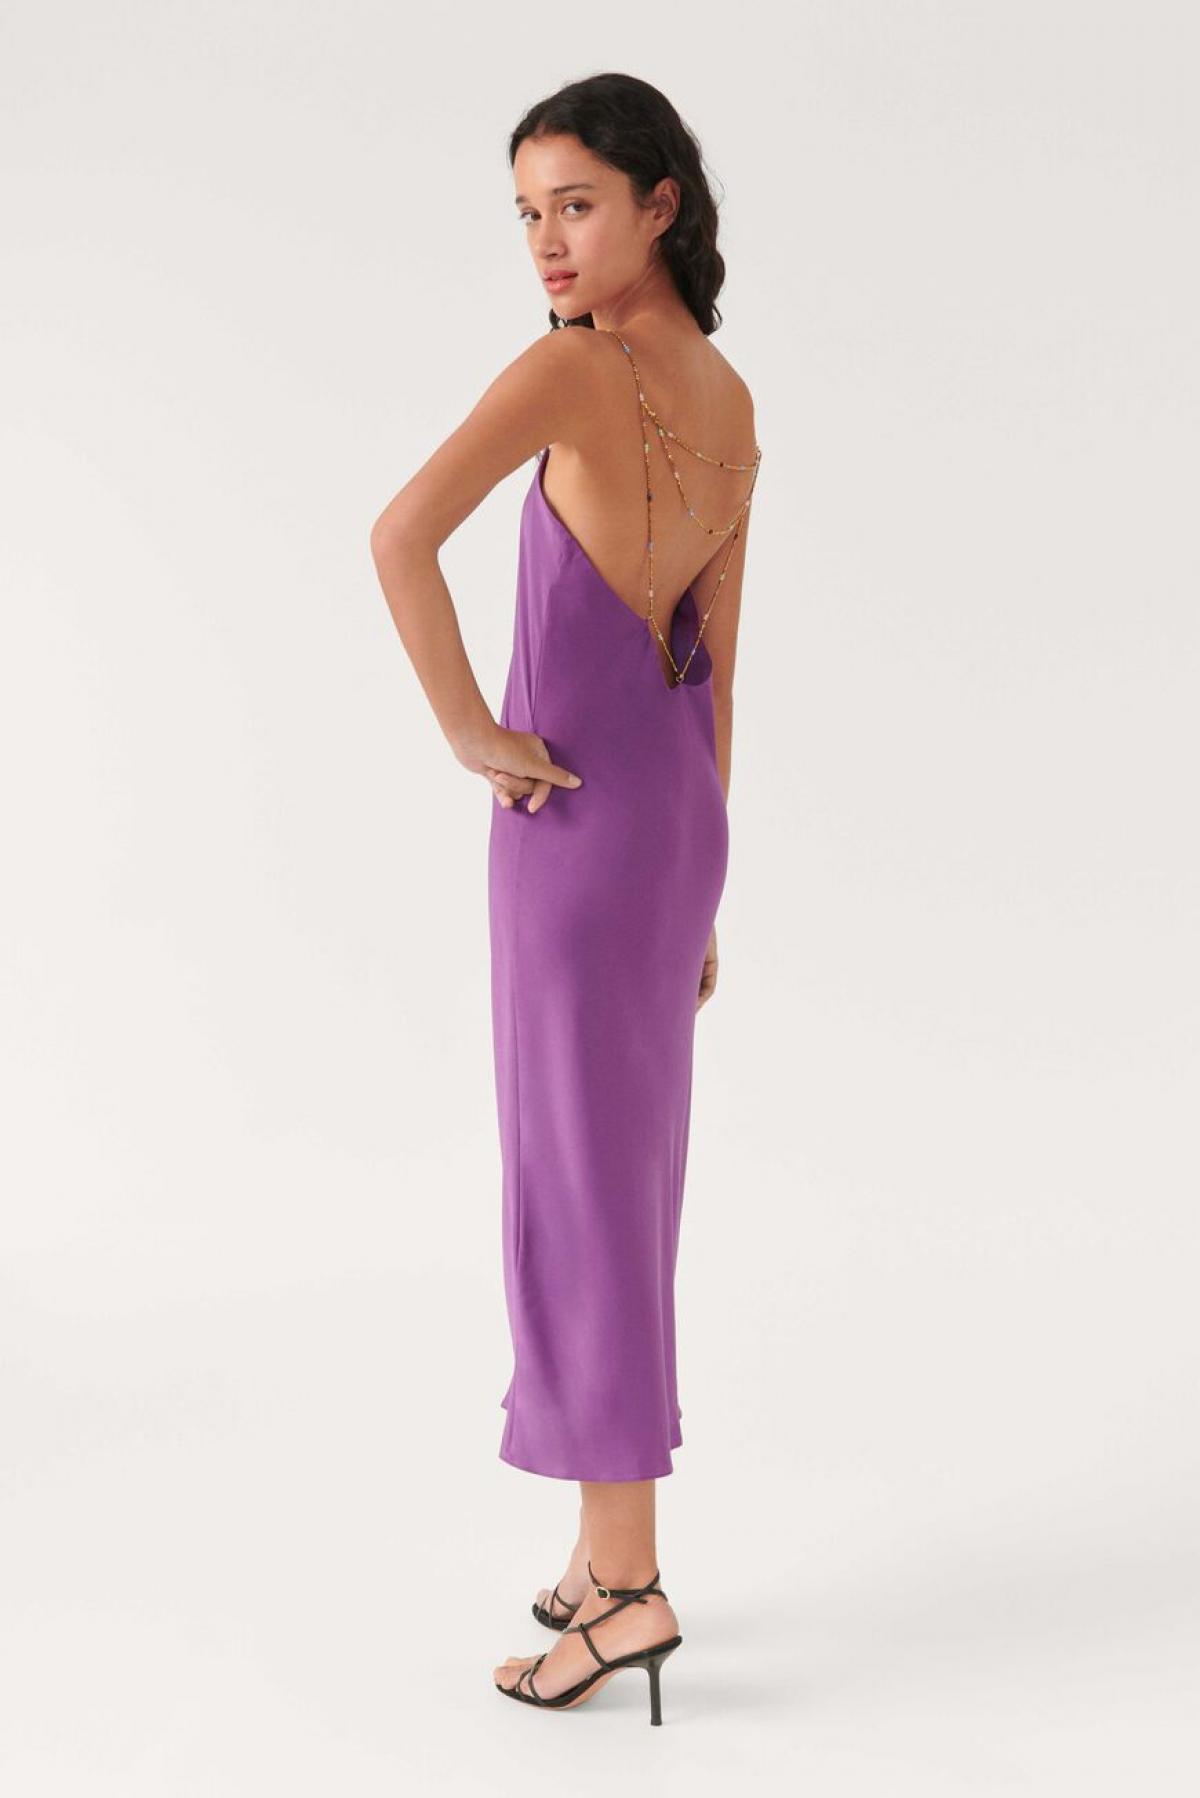 La robe violette ornée de bijoux